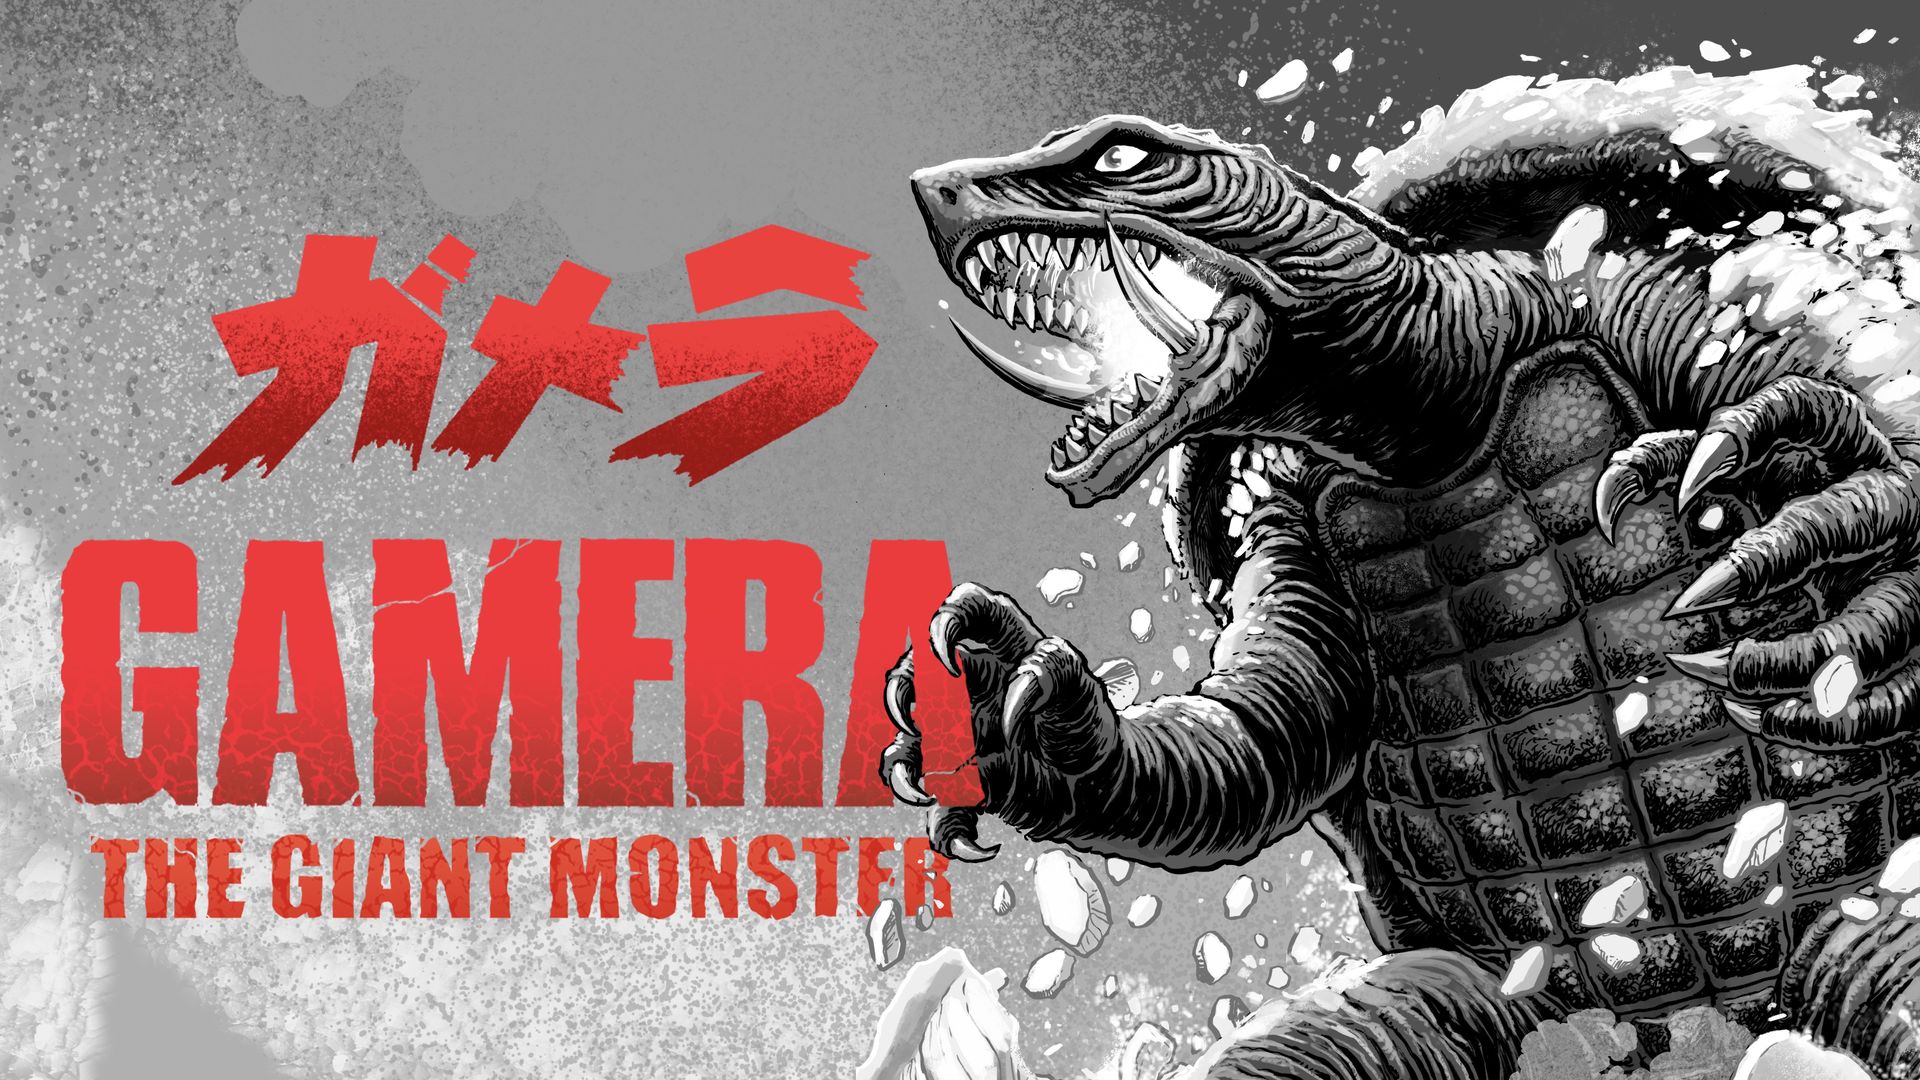 Gamera: The Giant Monster Backdrop